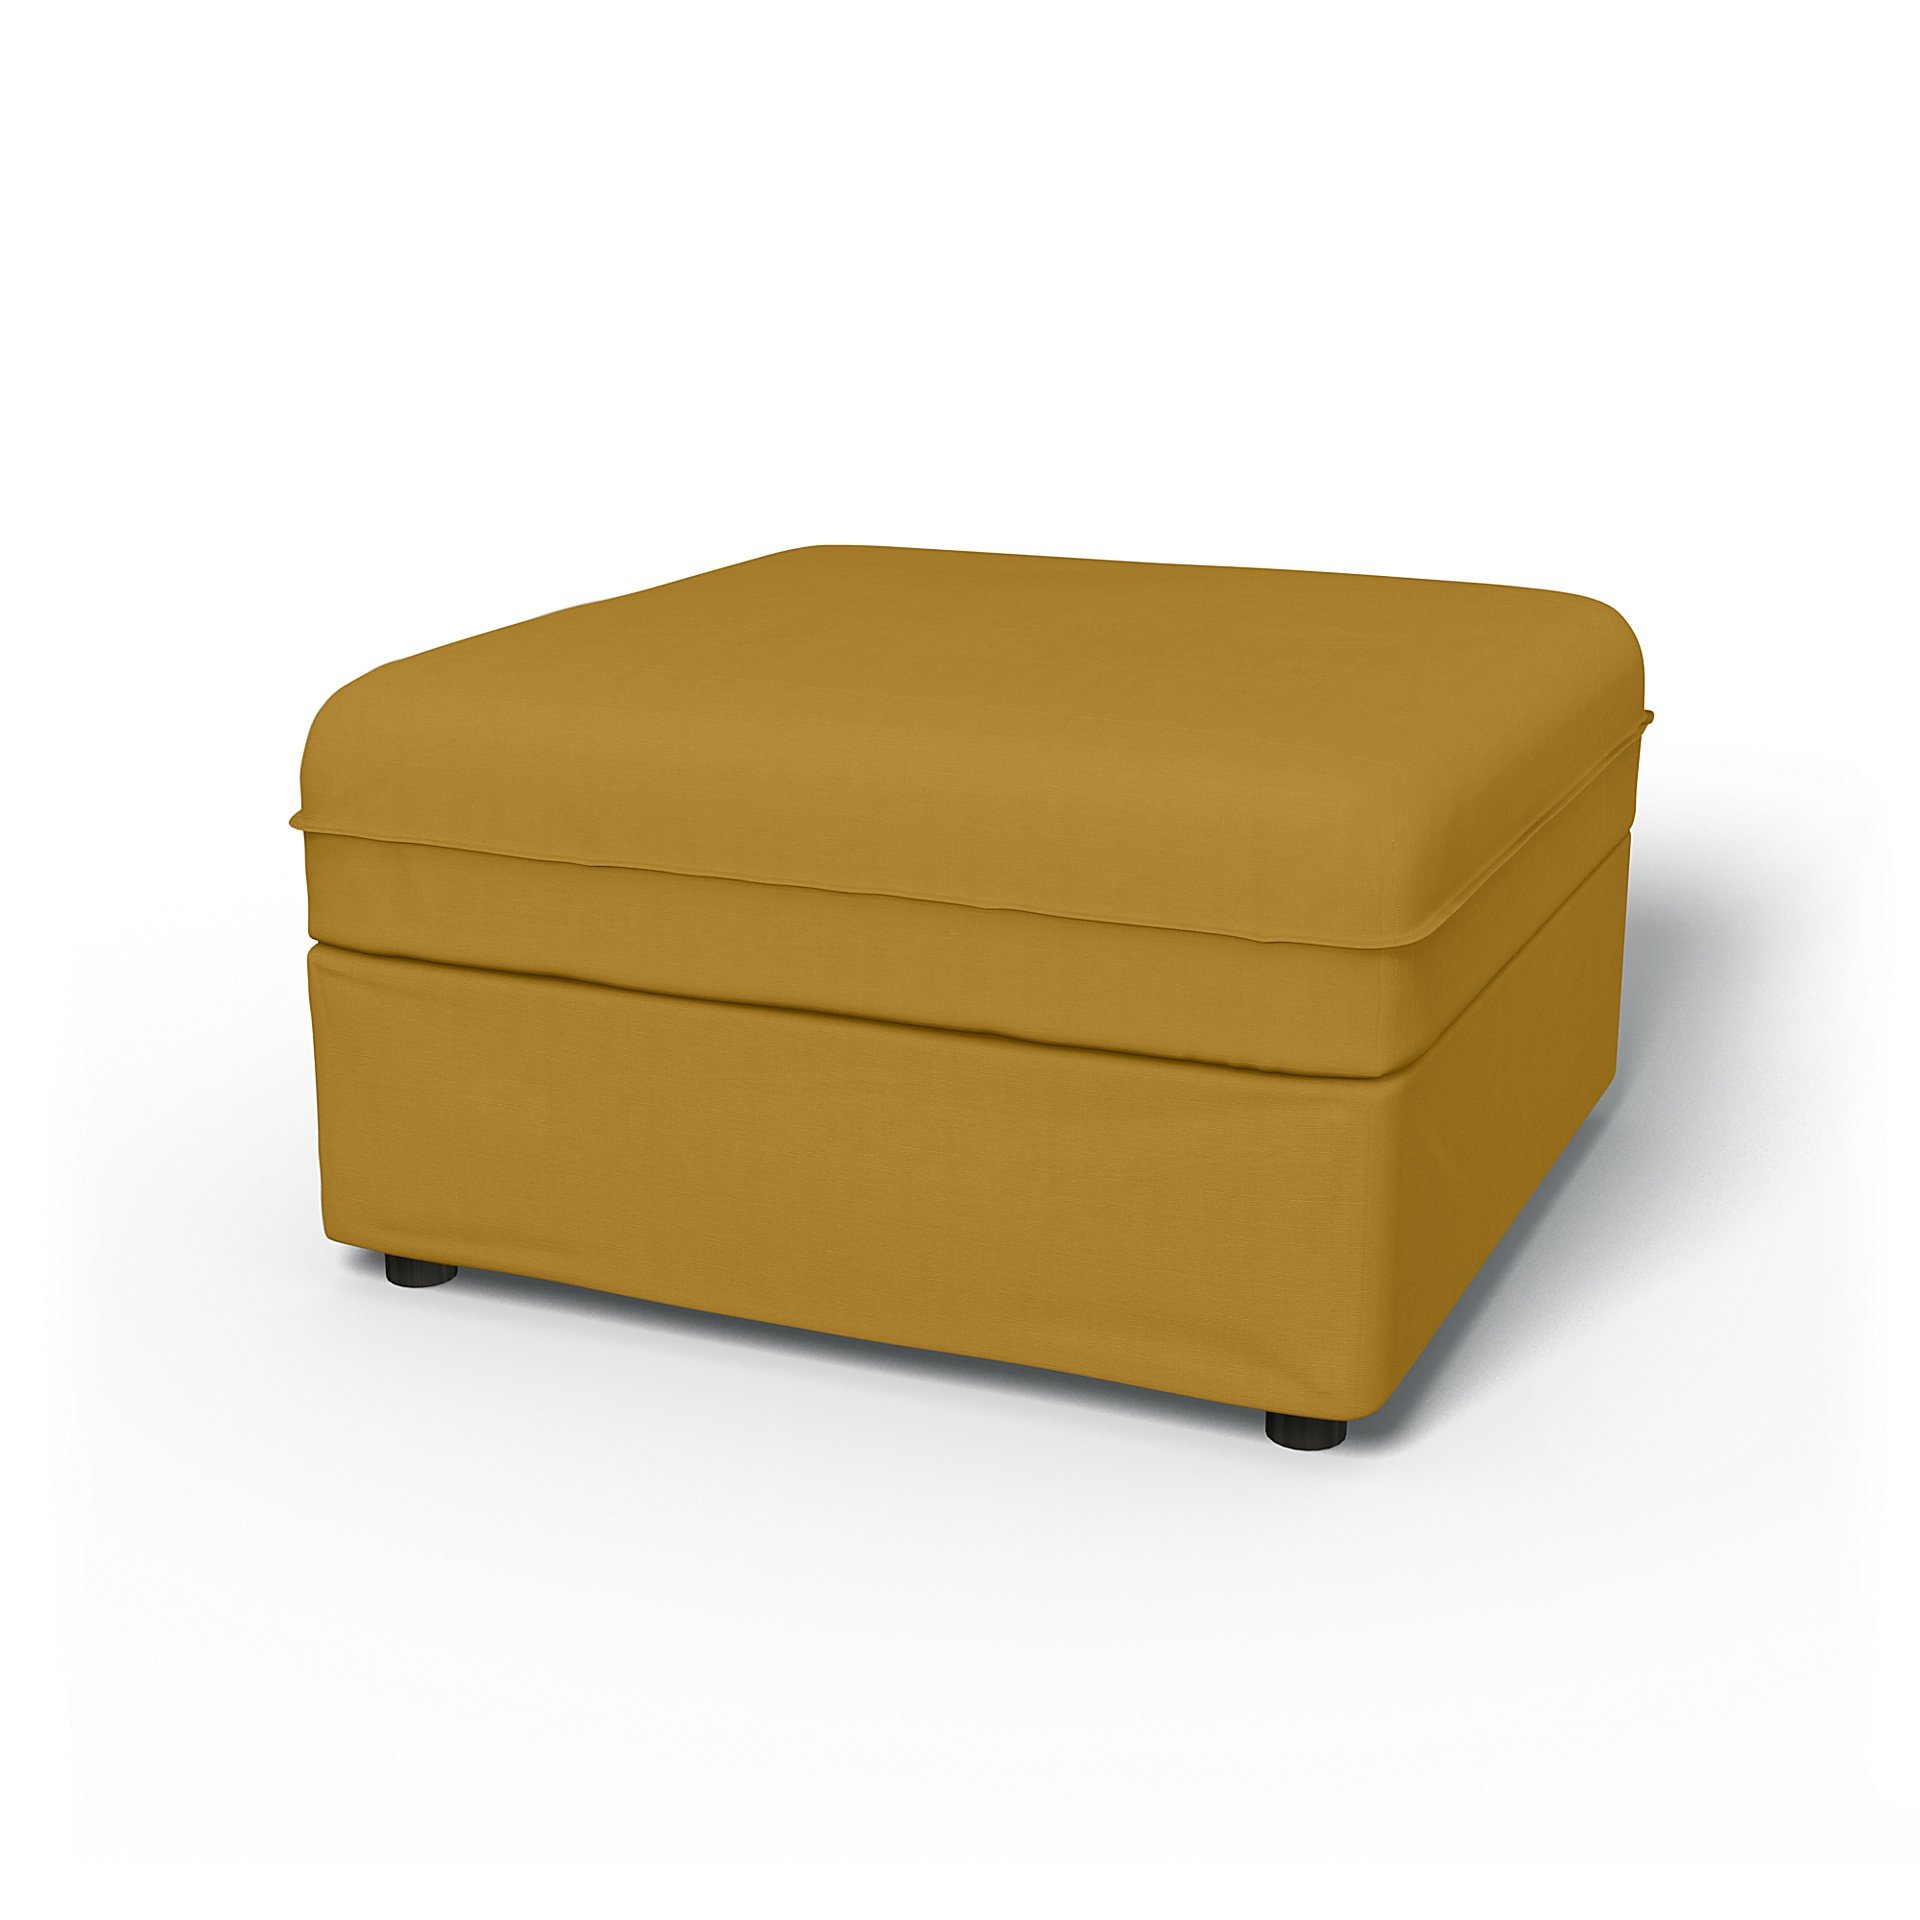 IKEA - Vallentuna Seat Module with Storage Cover 80x80cm 32x32in, Honey Mustard, Cotton - Bemz